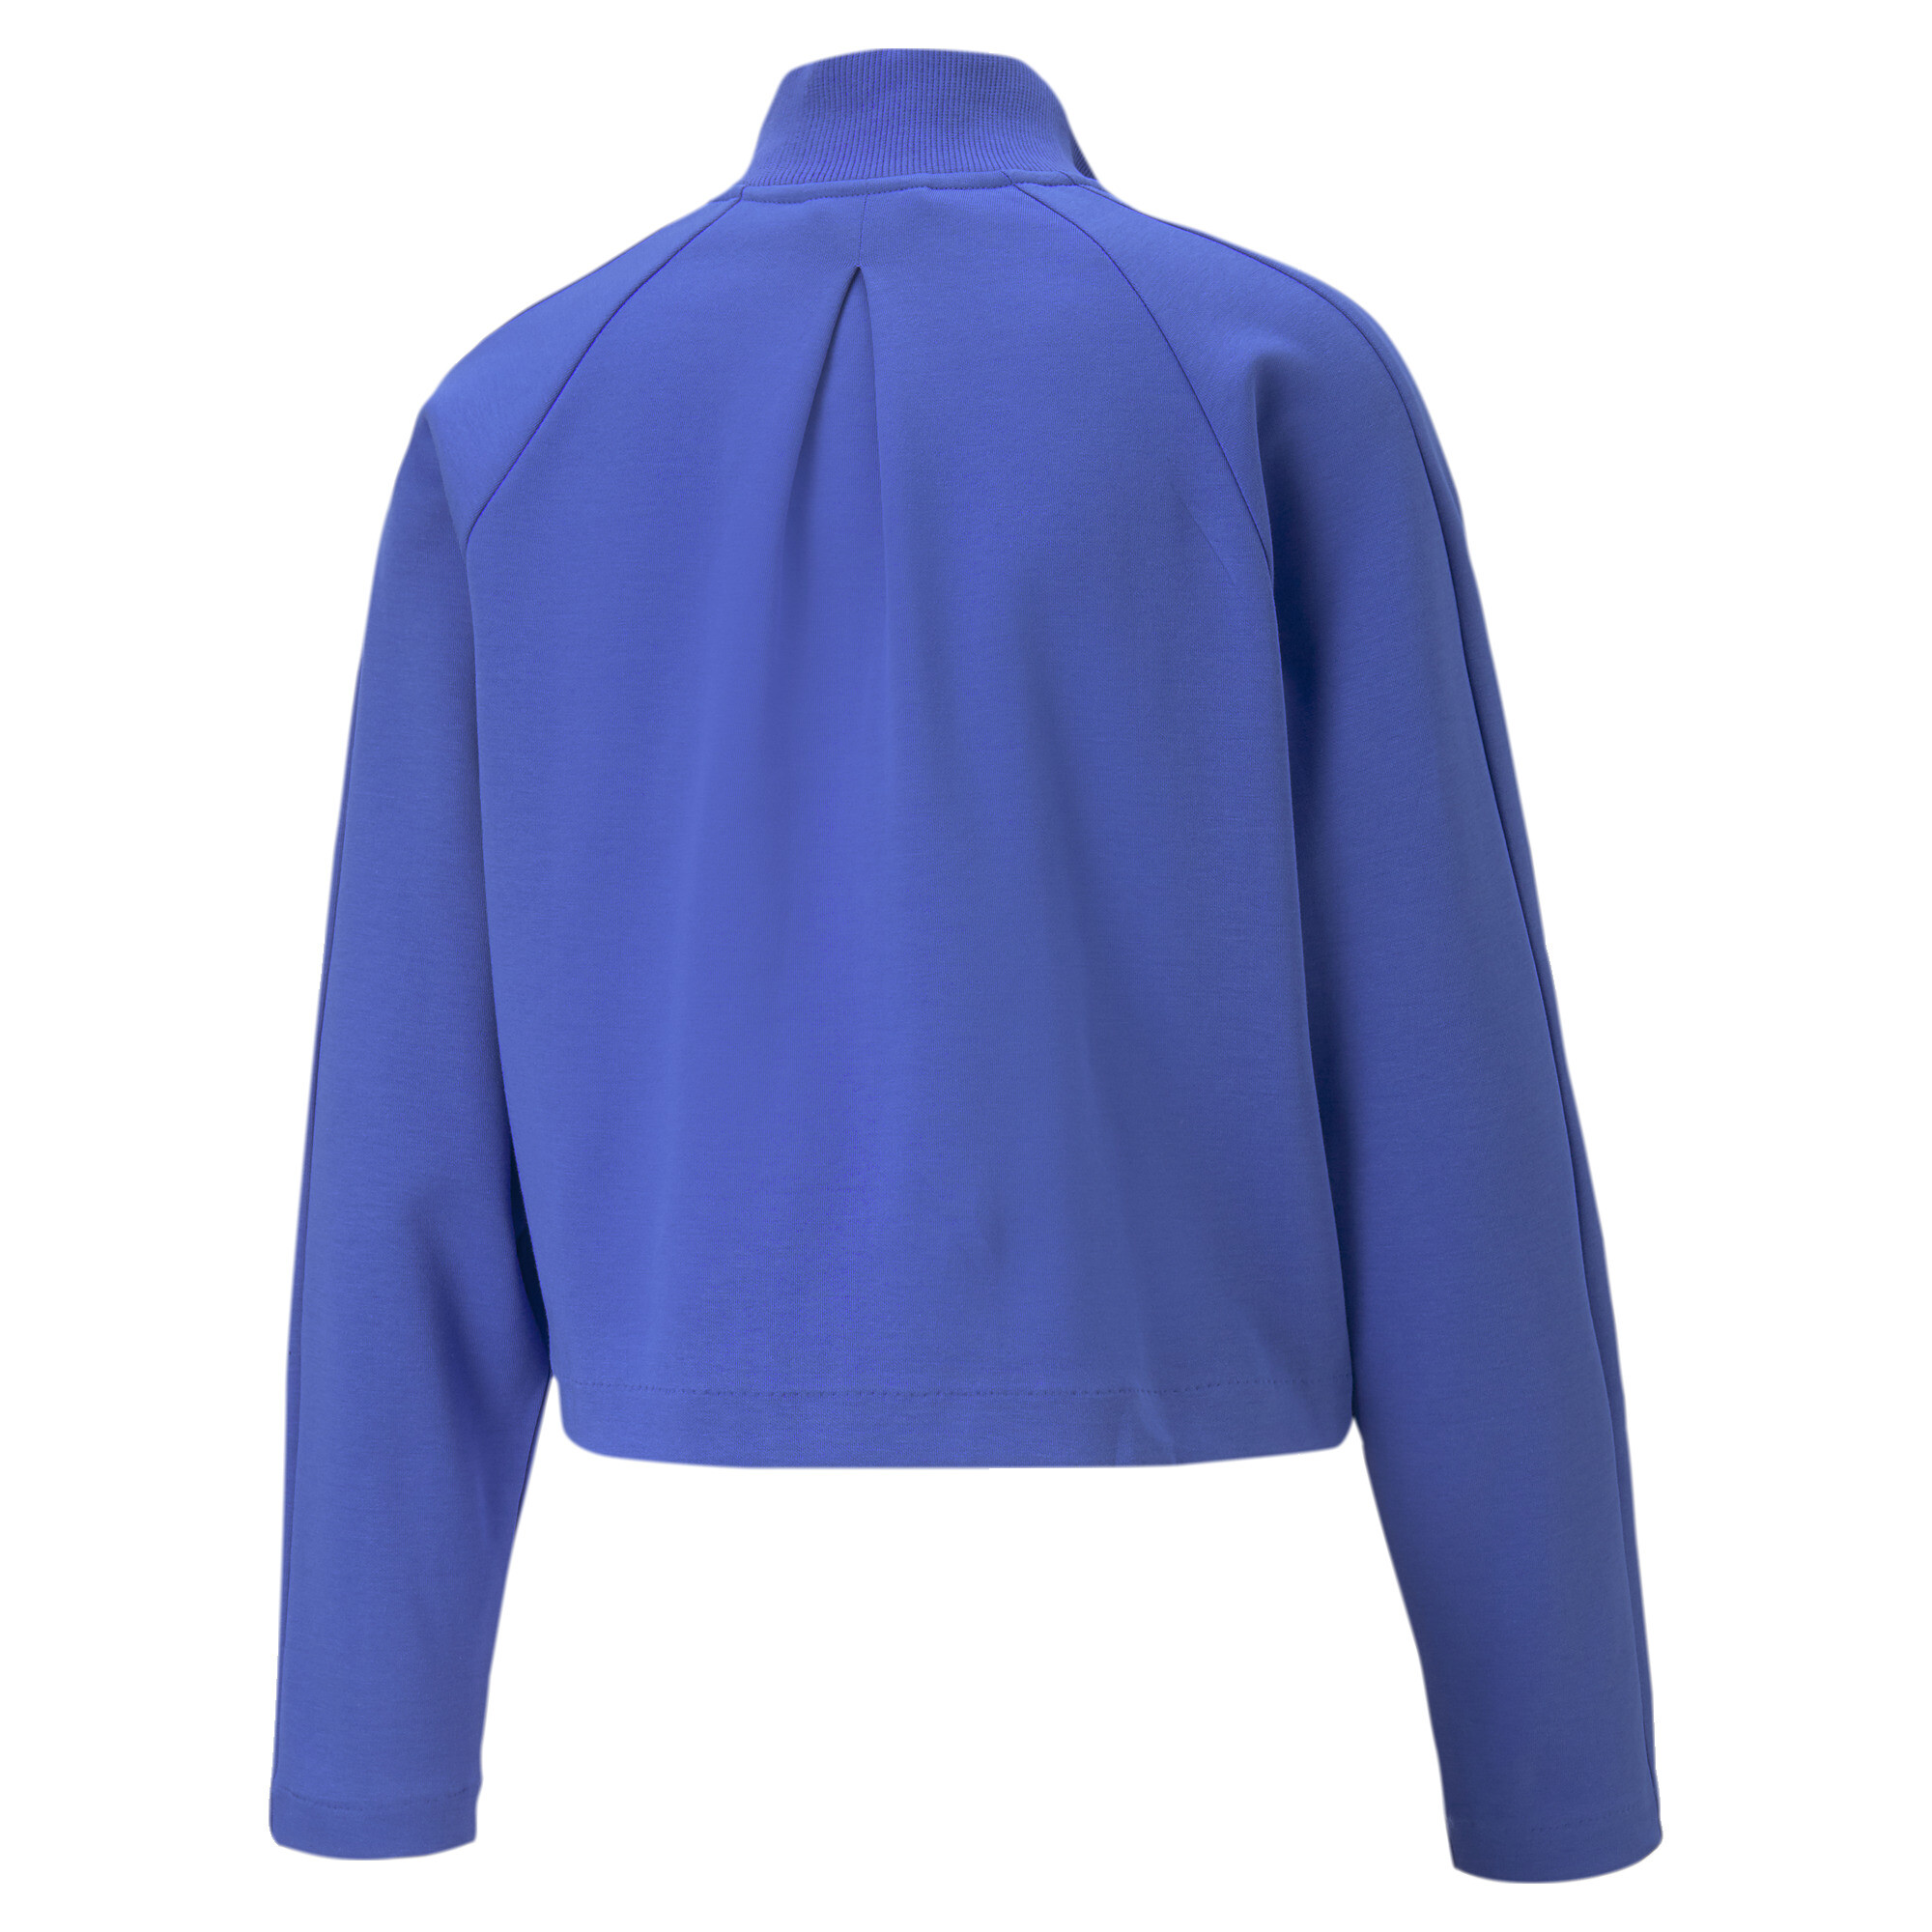 Women's PUMA T7 Track Jacket Women In Blue, Size Large